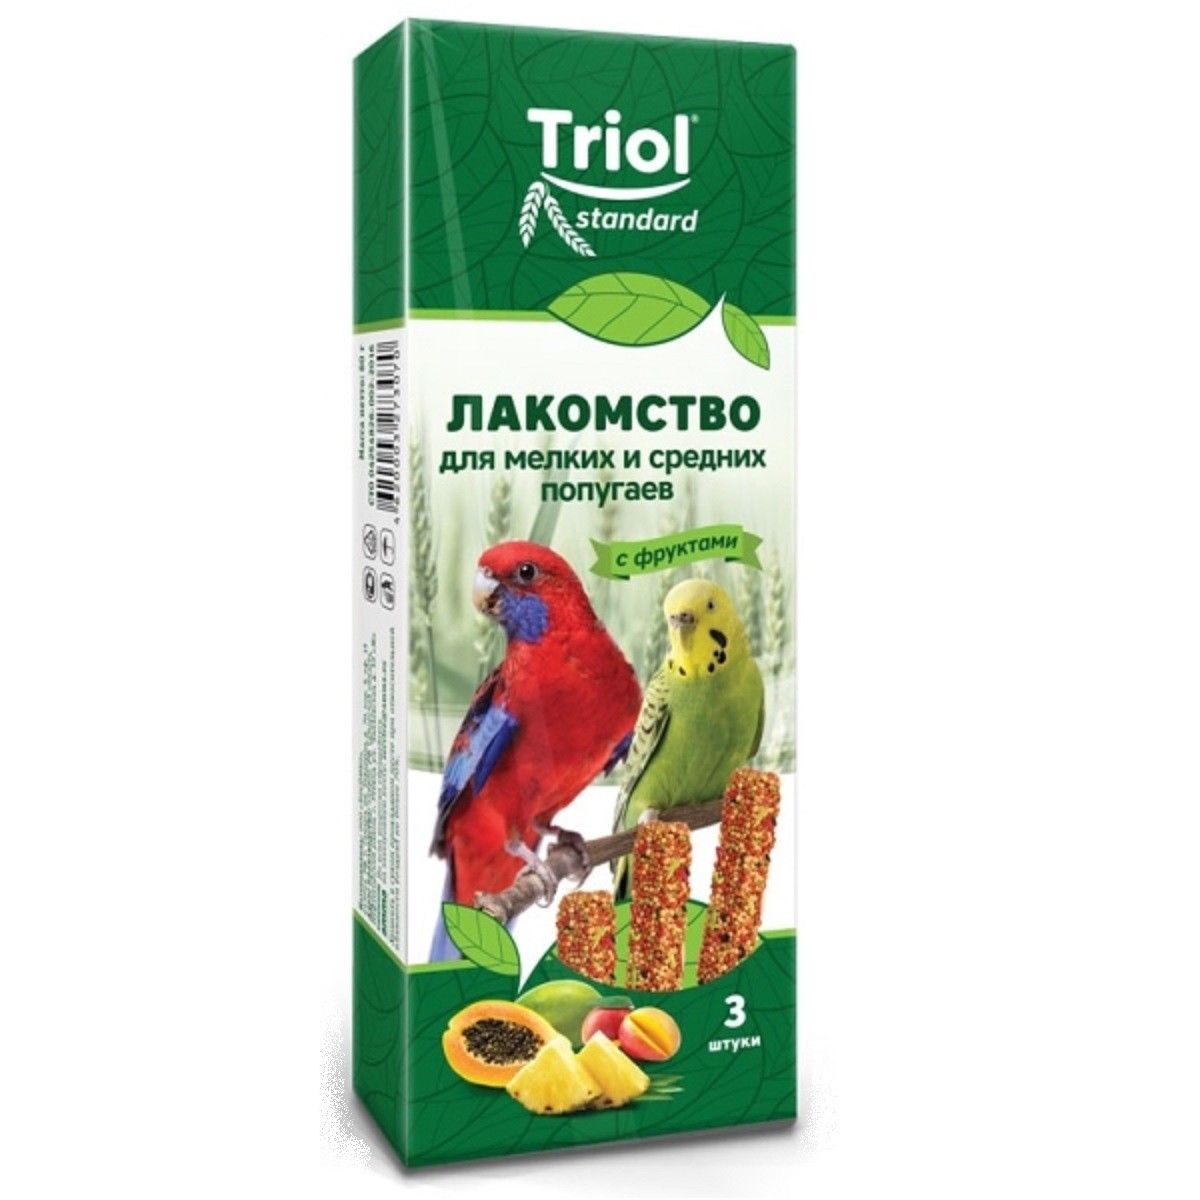 Лакомство для мелких и средних попугаев TRIOL с фруктами 3шт